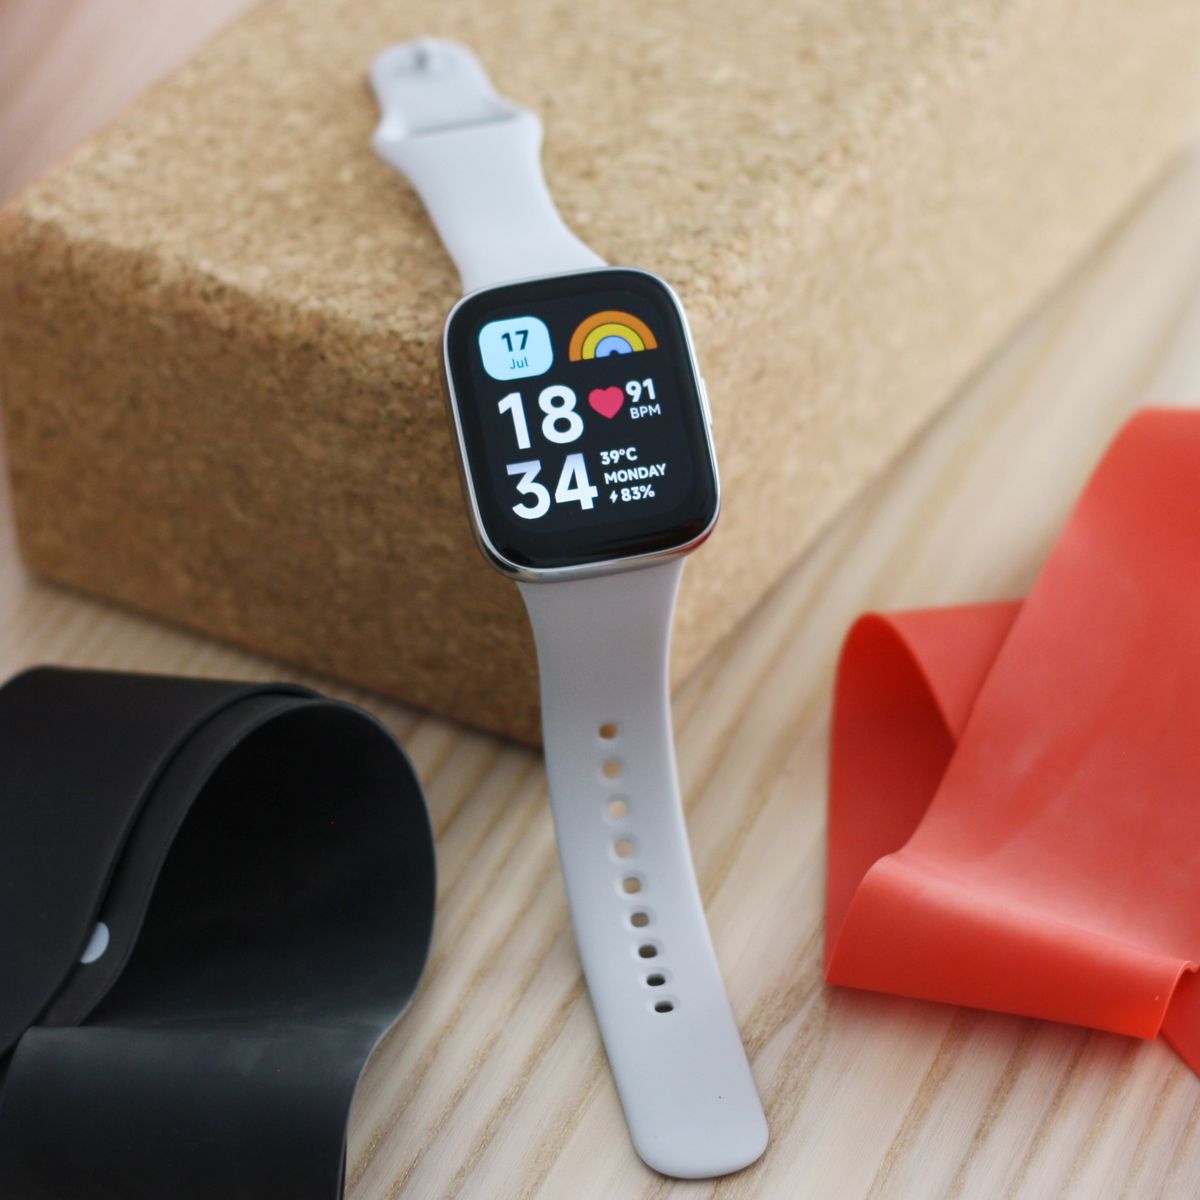 Xiaomi Redmi Watch 3 Active, análisis: Review, características y precio